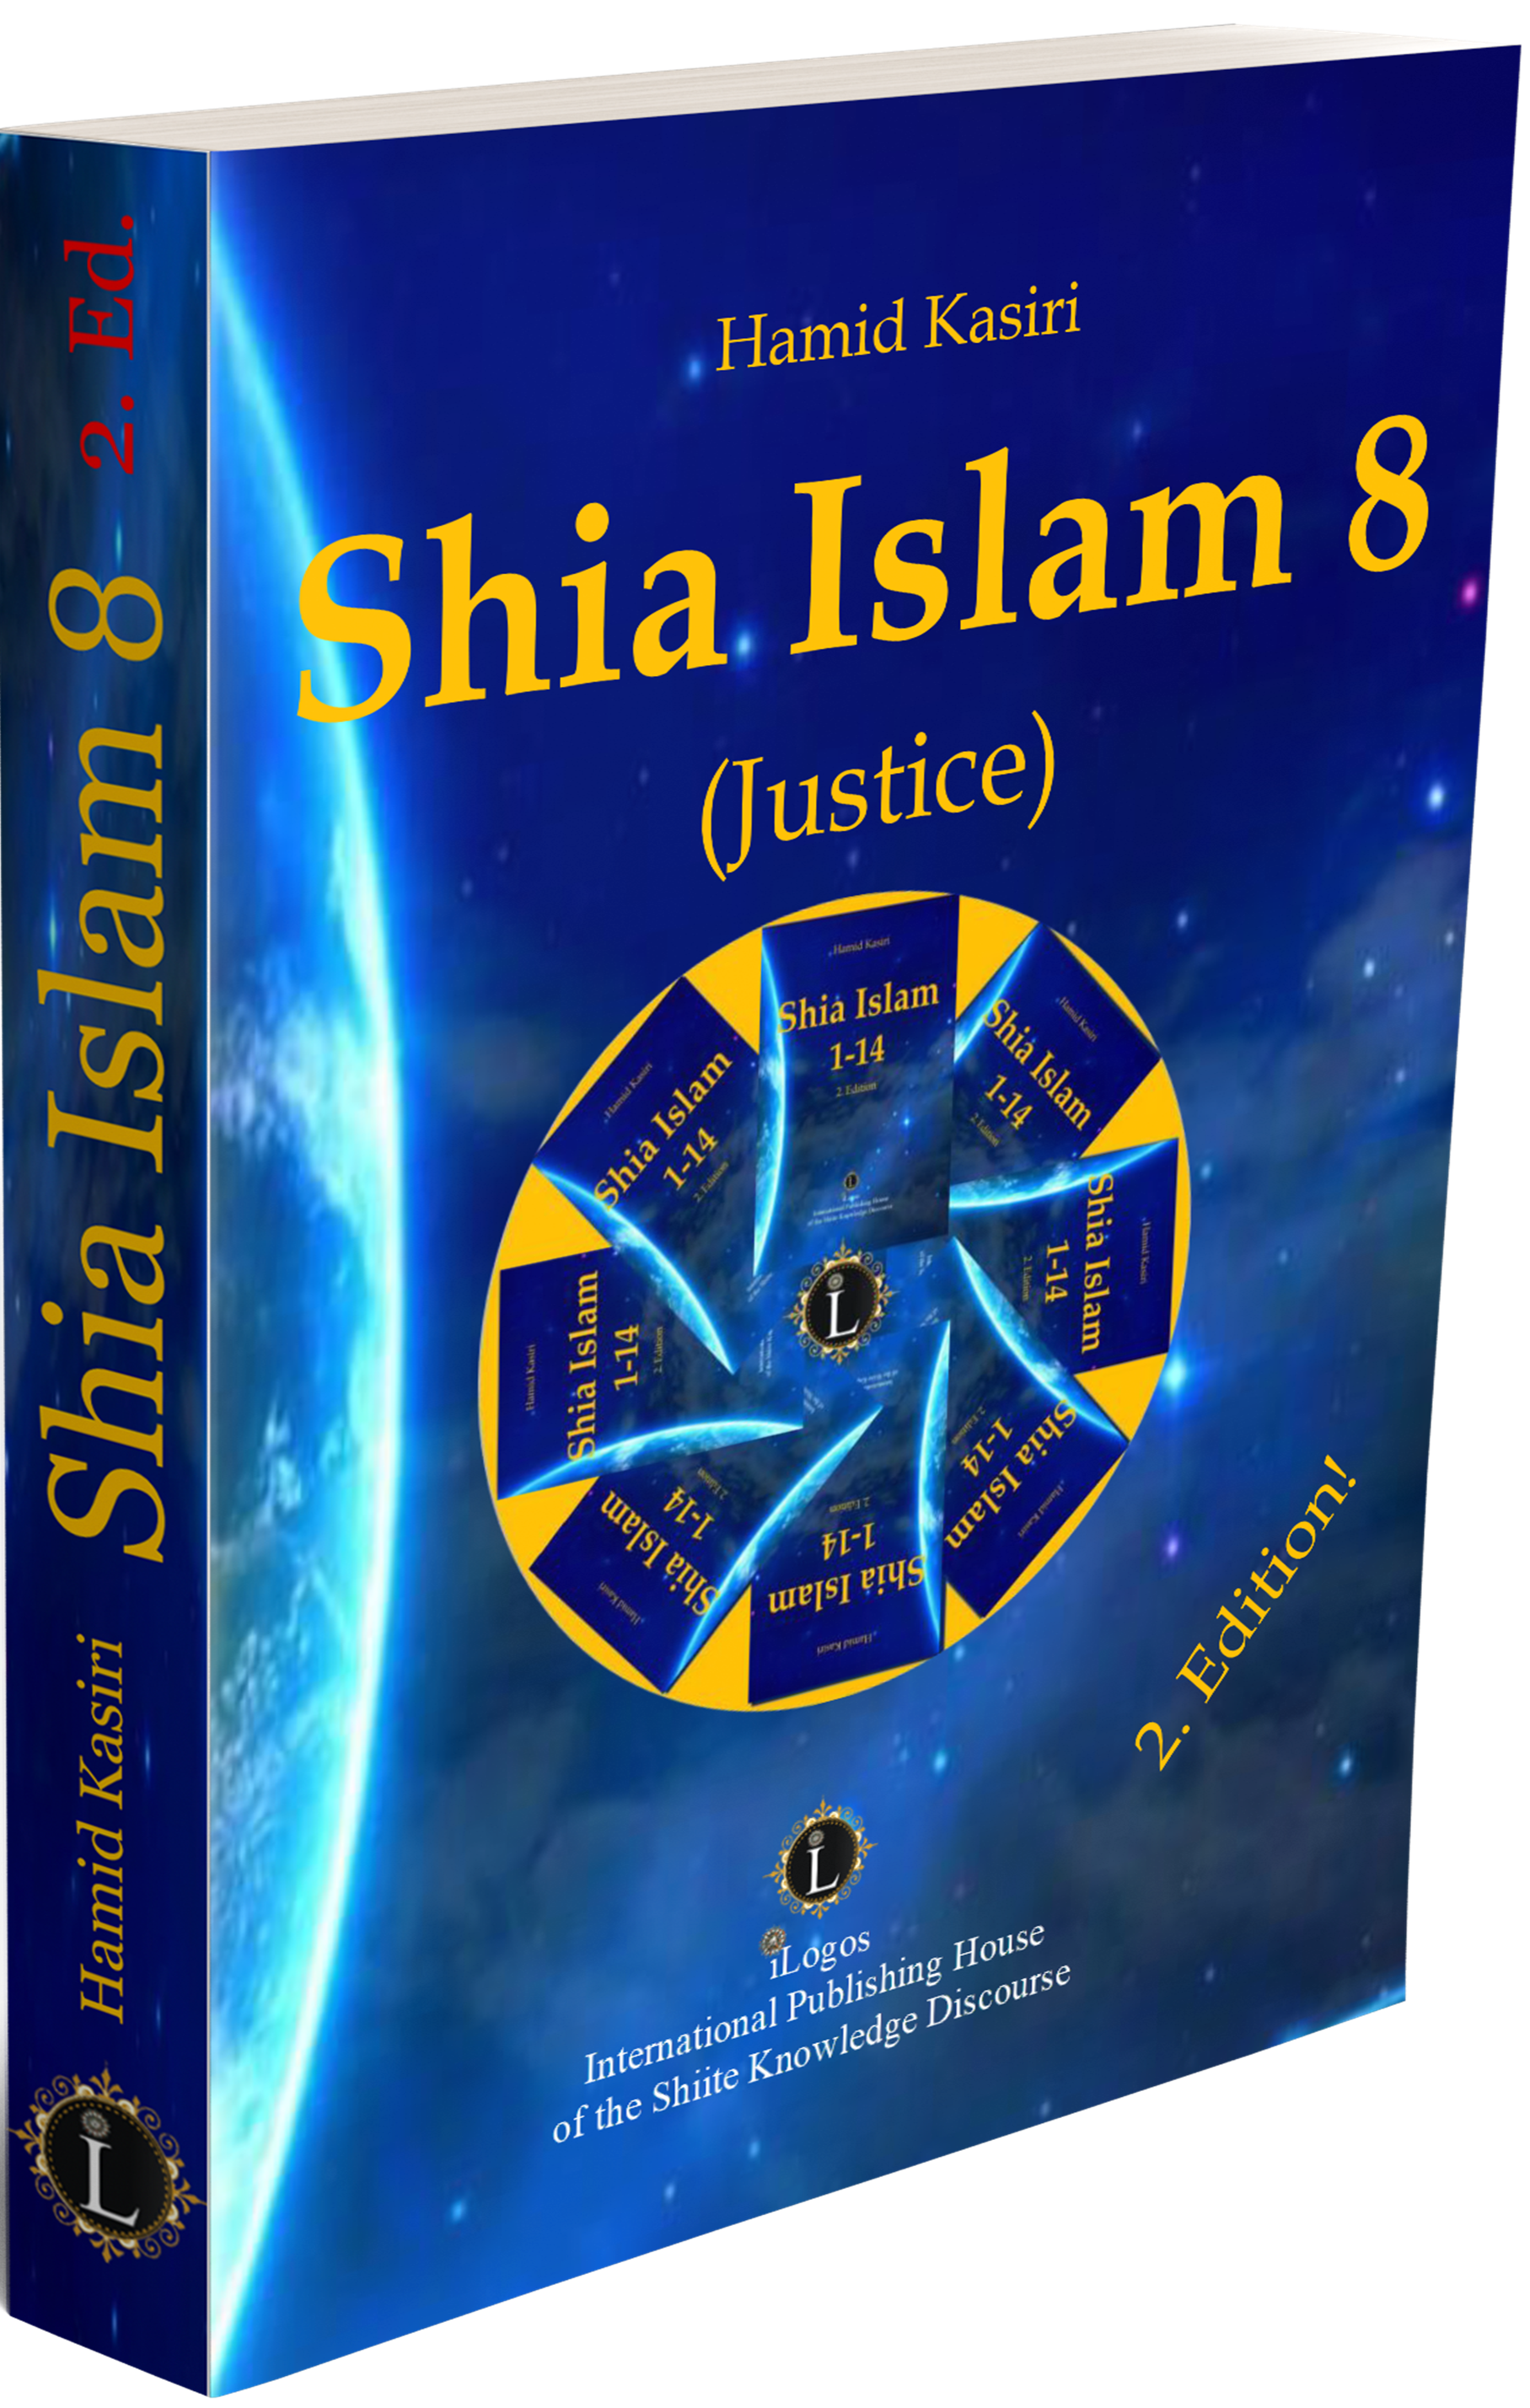 Schia Islam 8 (Justice) 2. Ed.